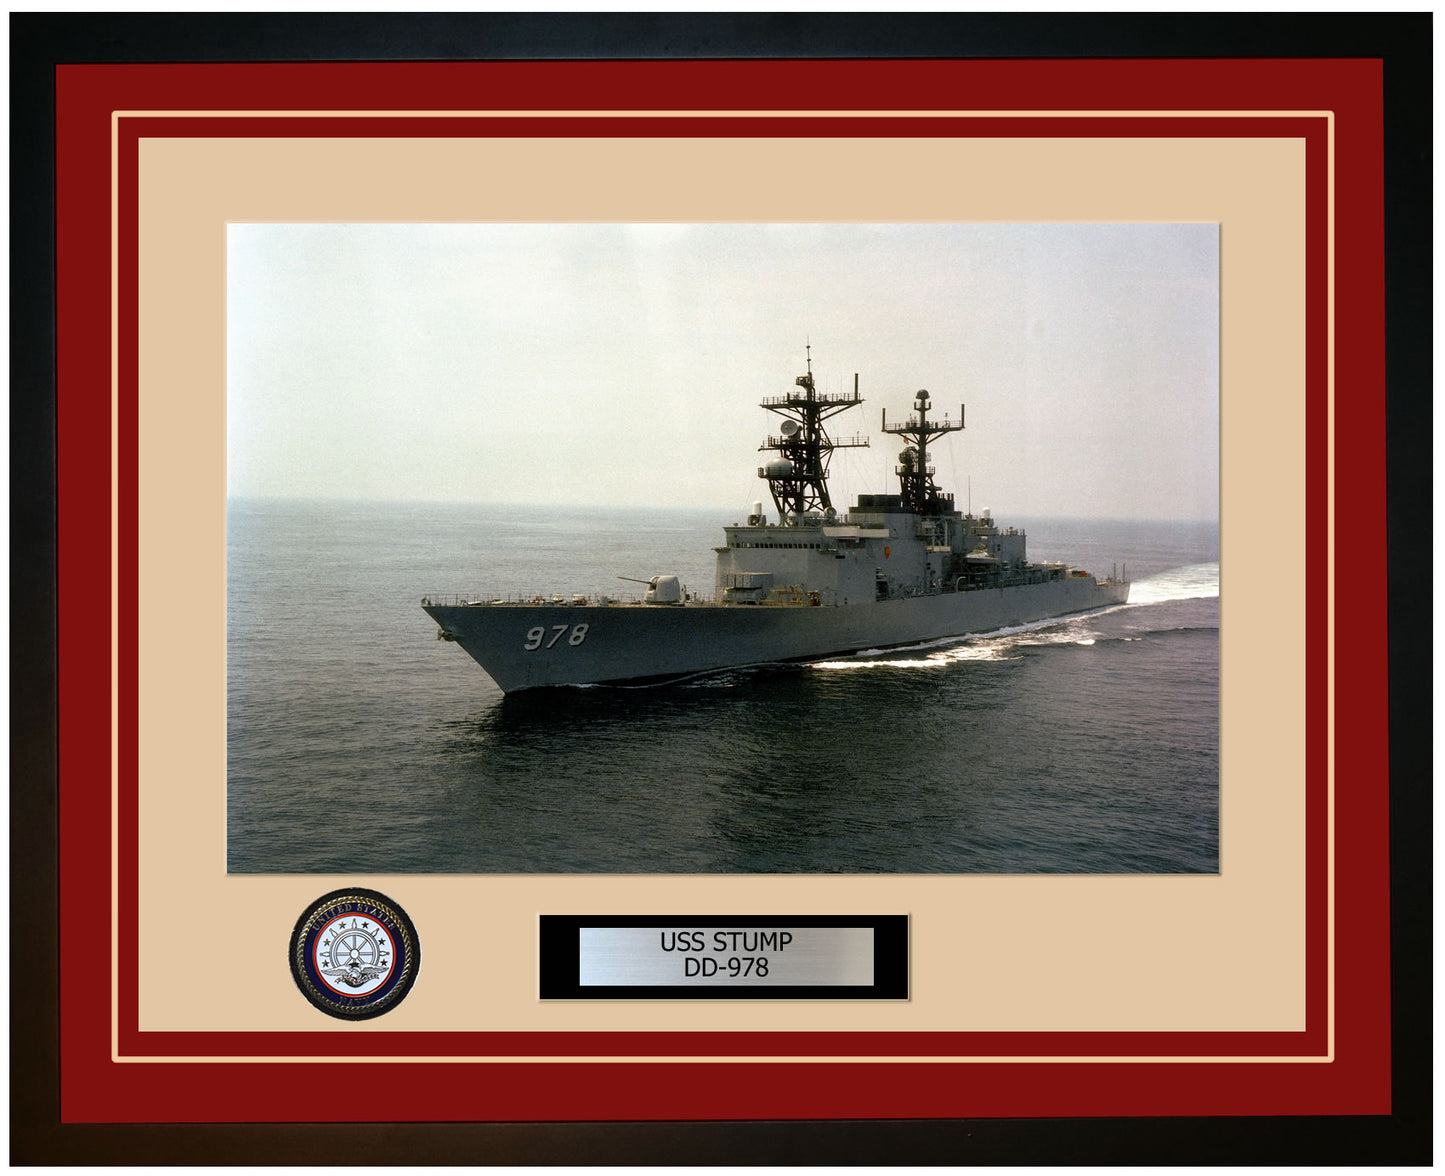 USS STUMP DD-978 Framed Navy Ship Photo Burgundy